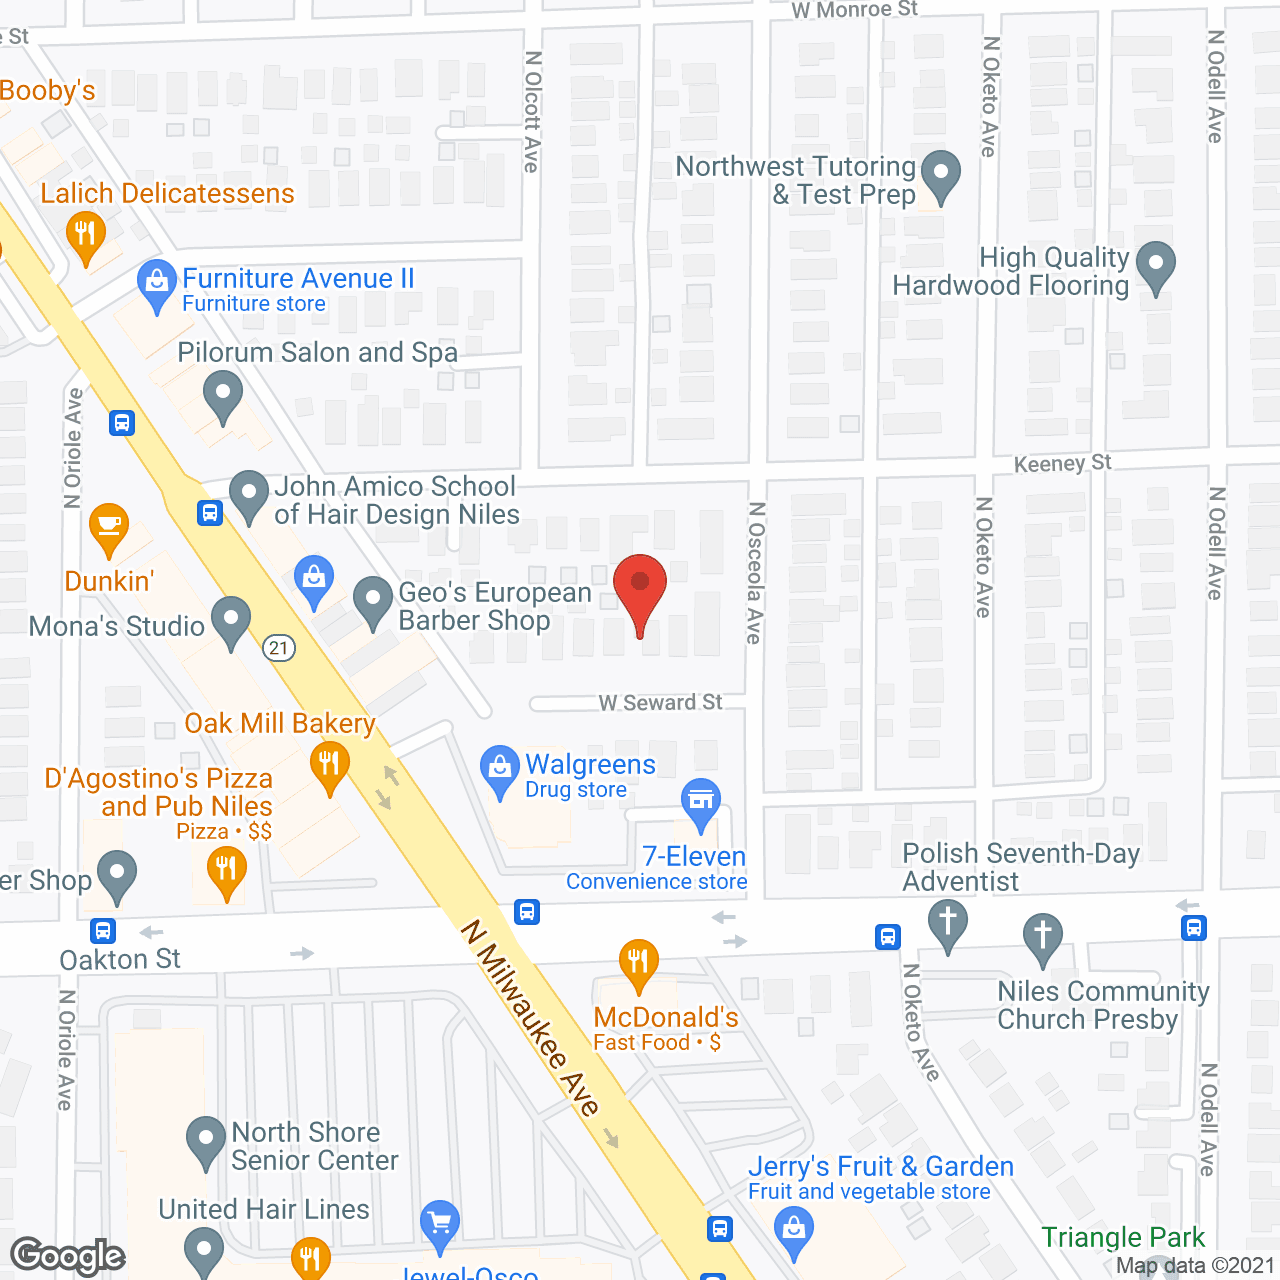 Private Home Care - Niles, IL in google map